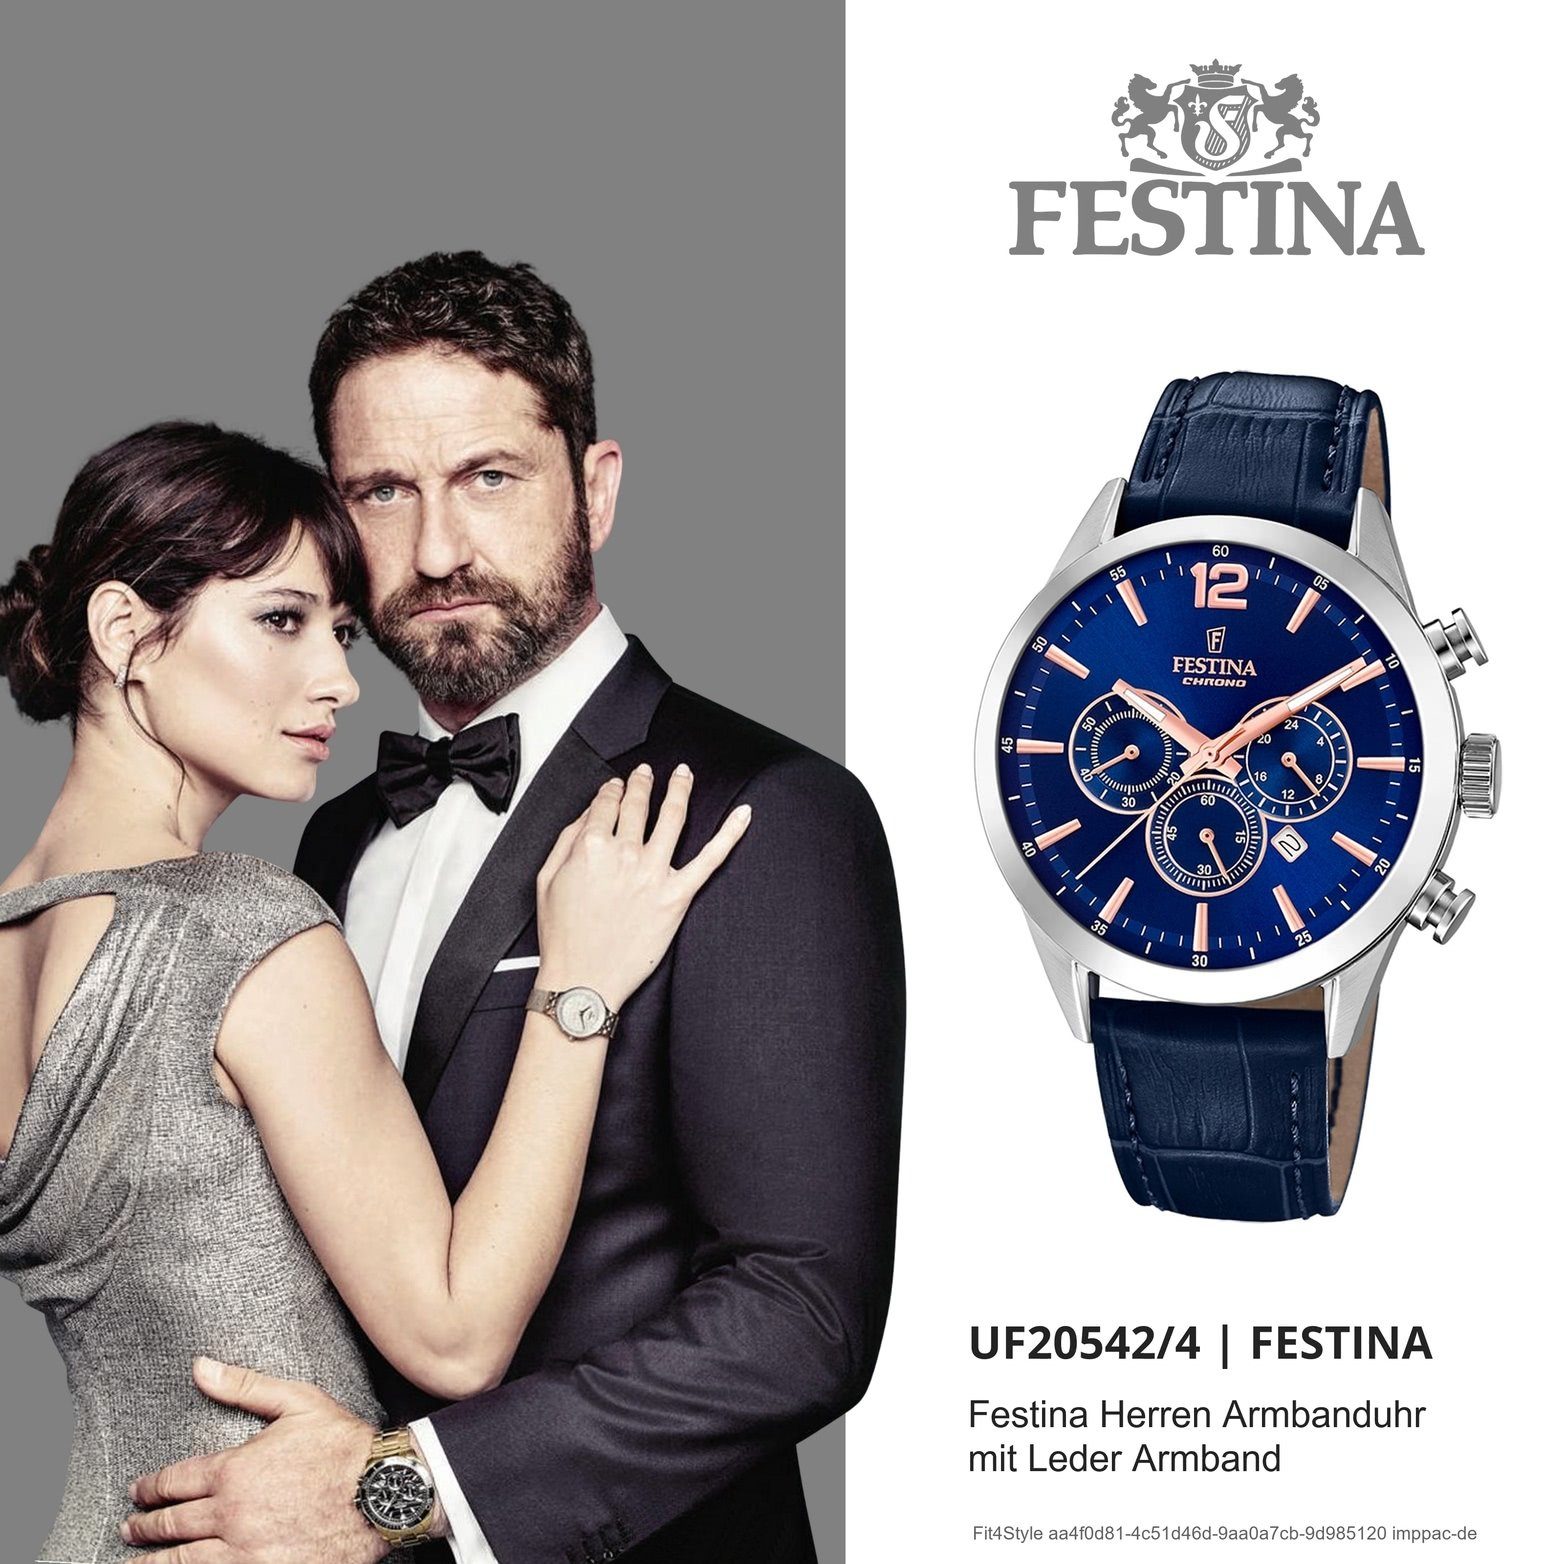 Festina Chronograph Festina Leder 44mm), F20542/4, Fashion-S Lederarmband, mit Herrenuhr Herren (ca. groß Gehäuse, Uhr rundes